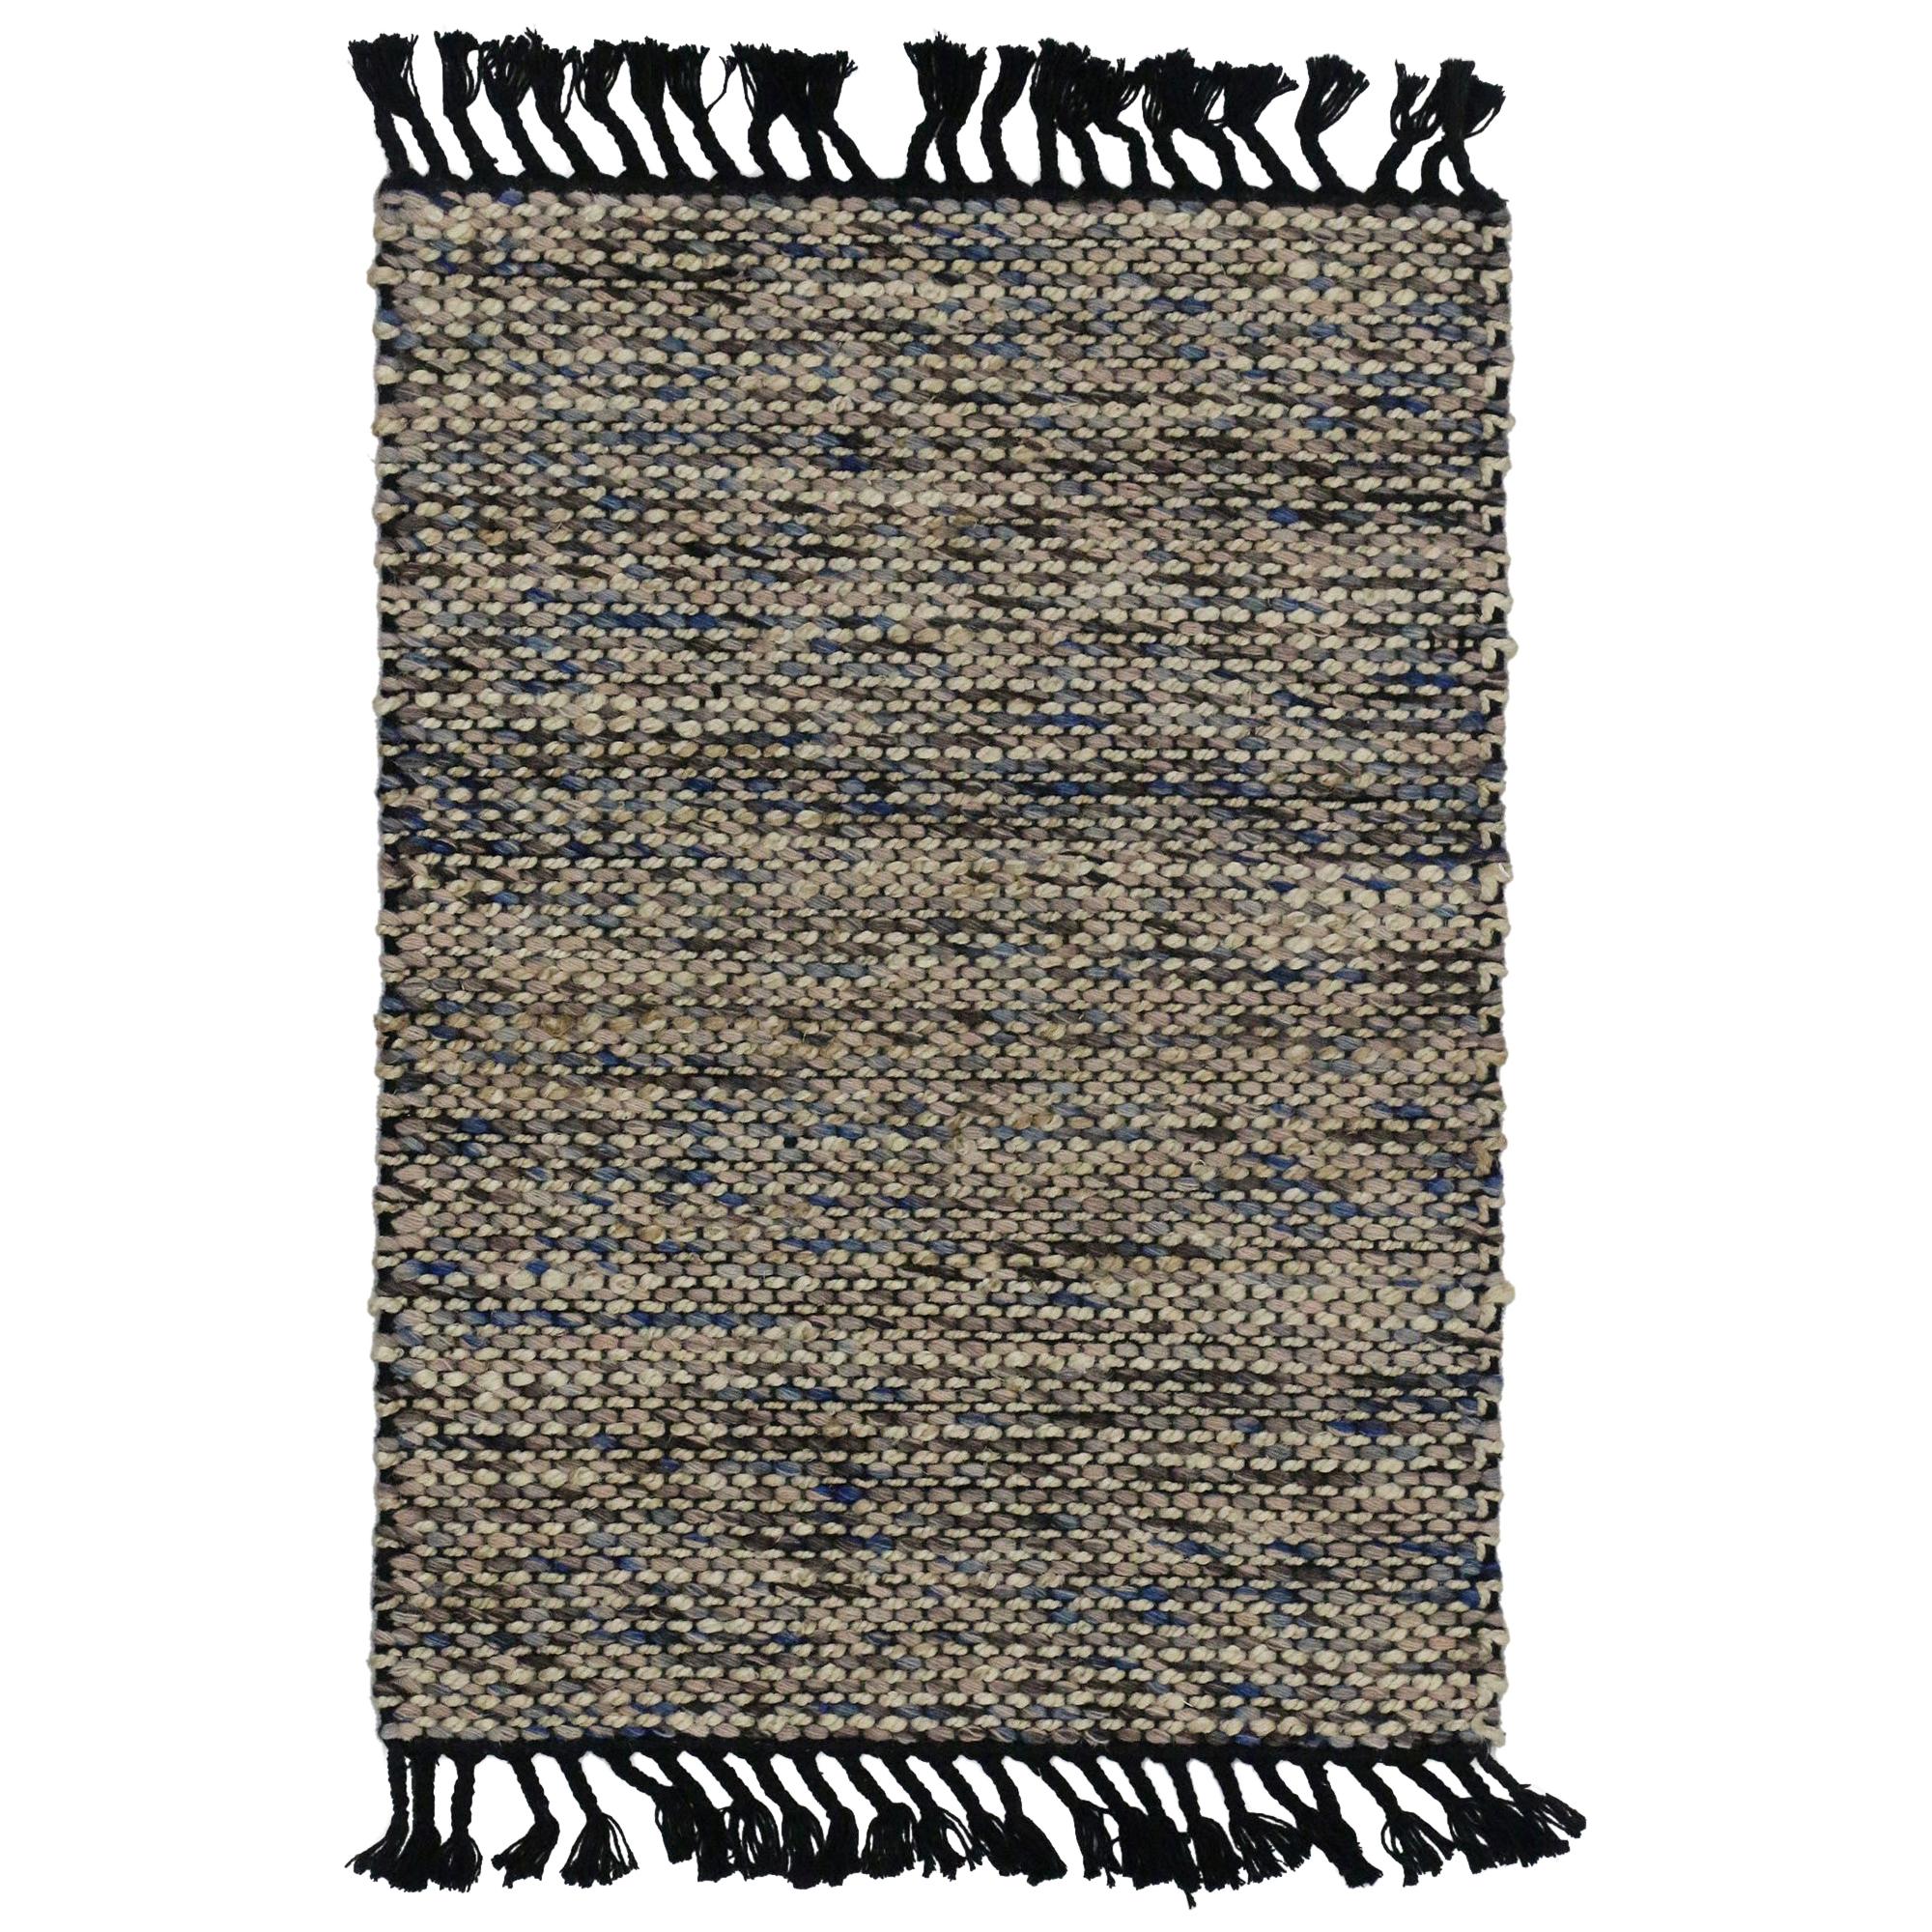 Dhurrie Flat-Weave Kilim Rug with Modern Lake House Style, Custom Area Rug